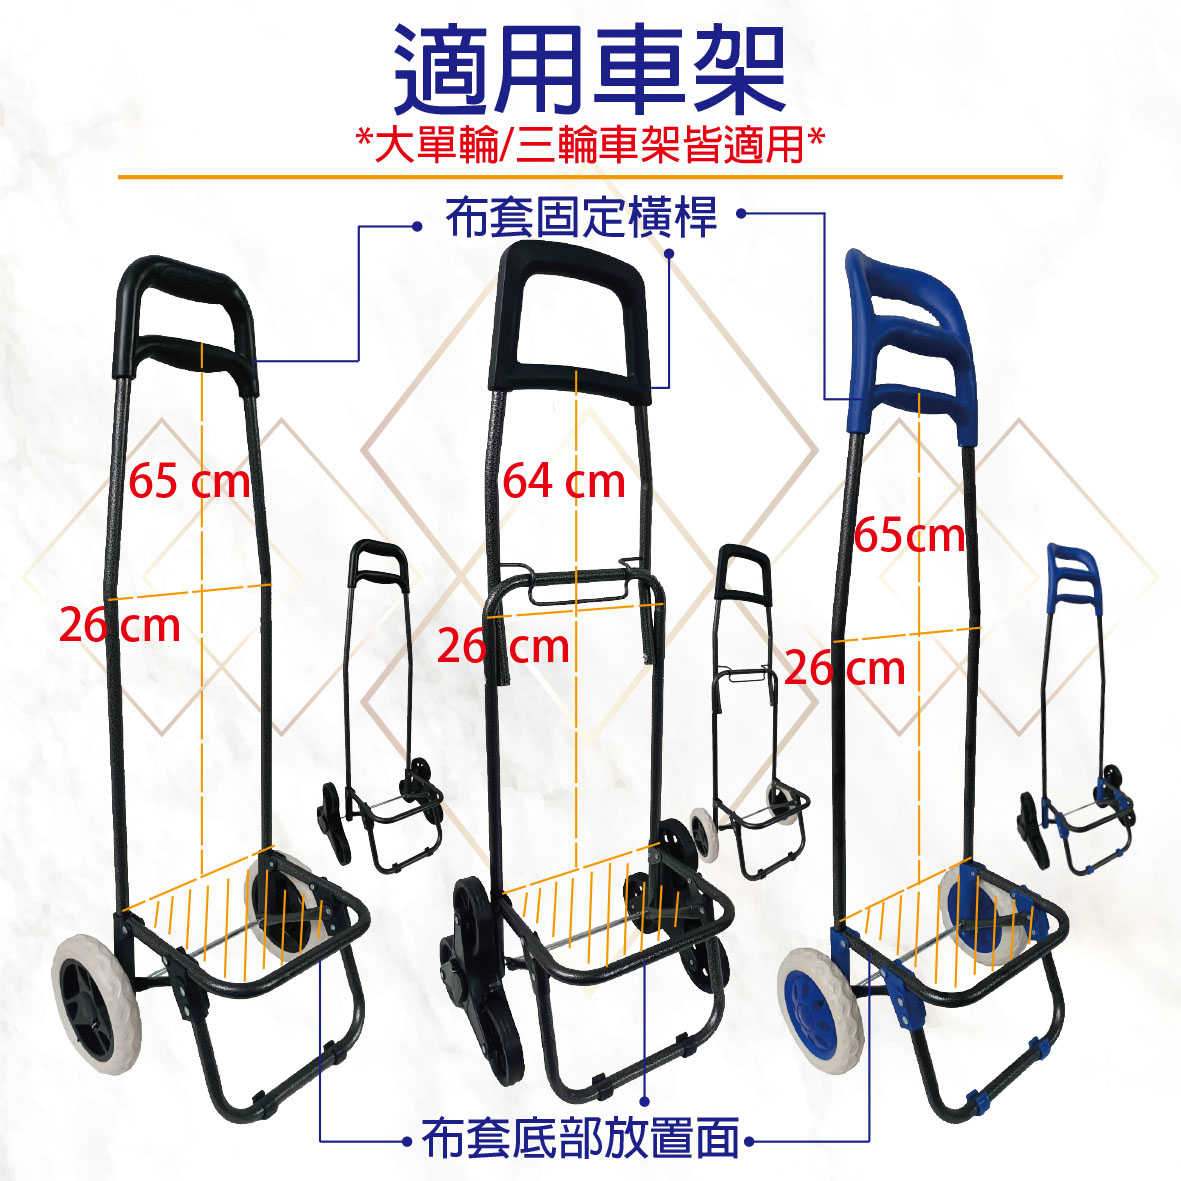 傳統款 - 購物車專用袋/替換布套 (大單輪/三輪爬梯) (含底板) (不含車架及輪子)